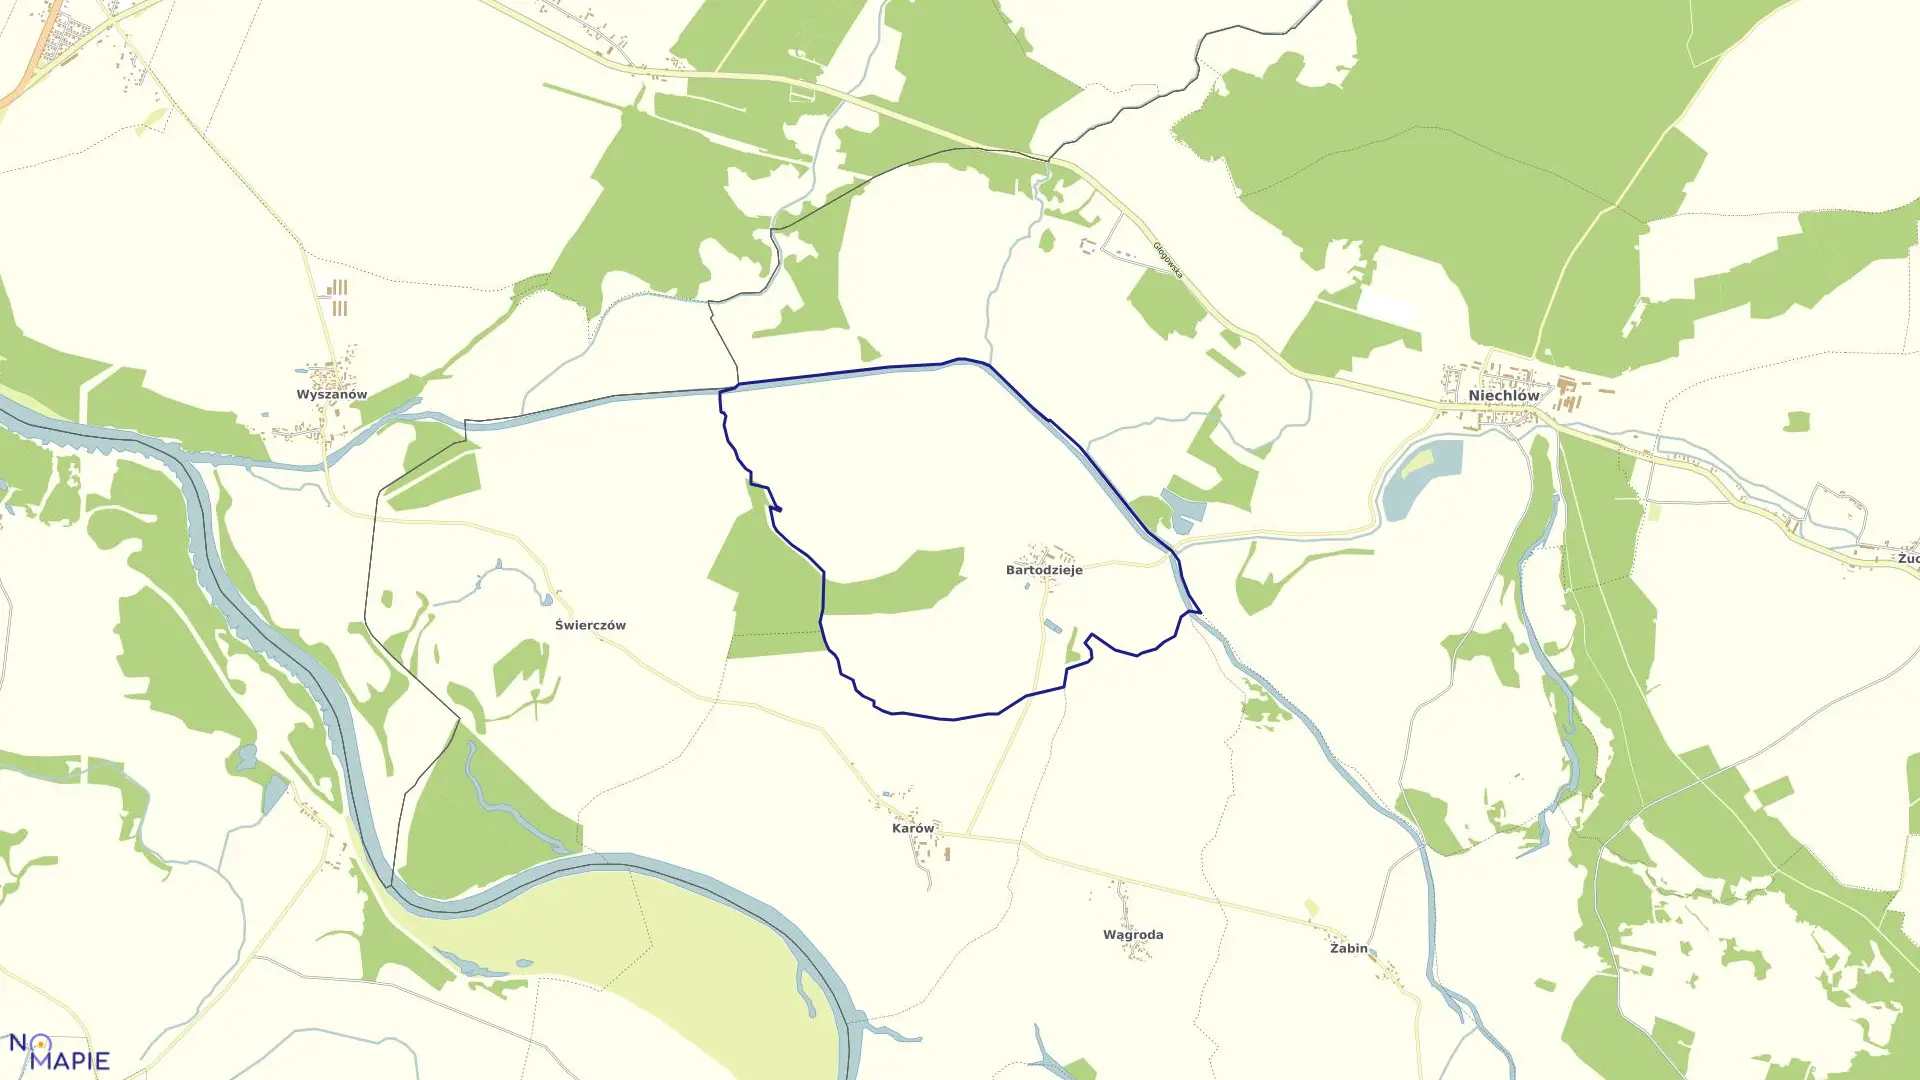 Mapa obrębu Bartodzieje w gminie Niechlów